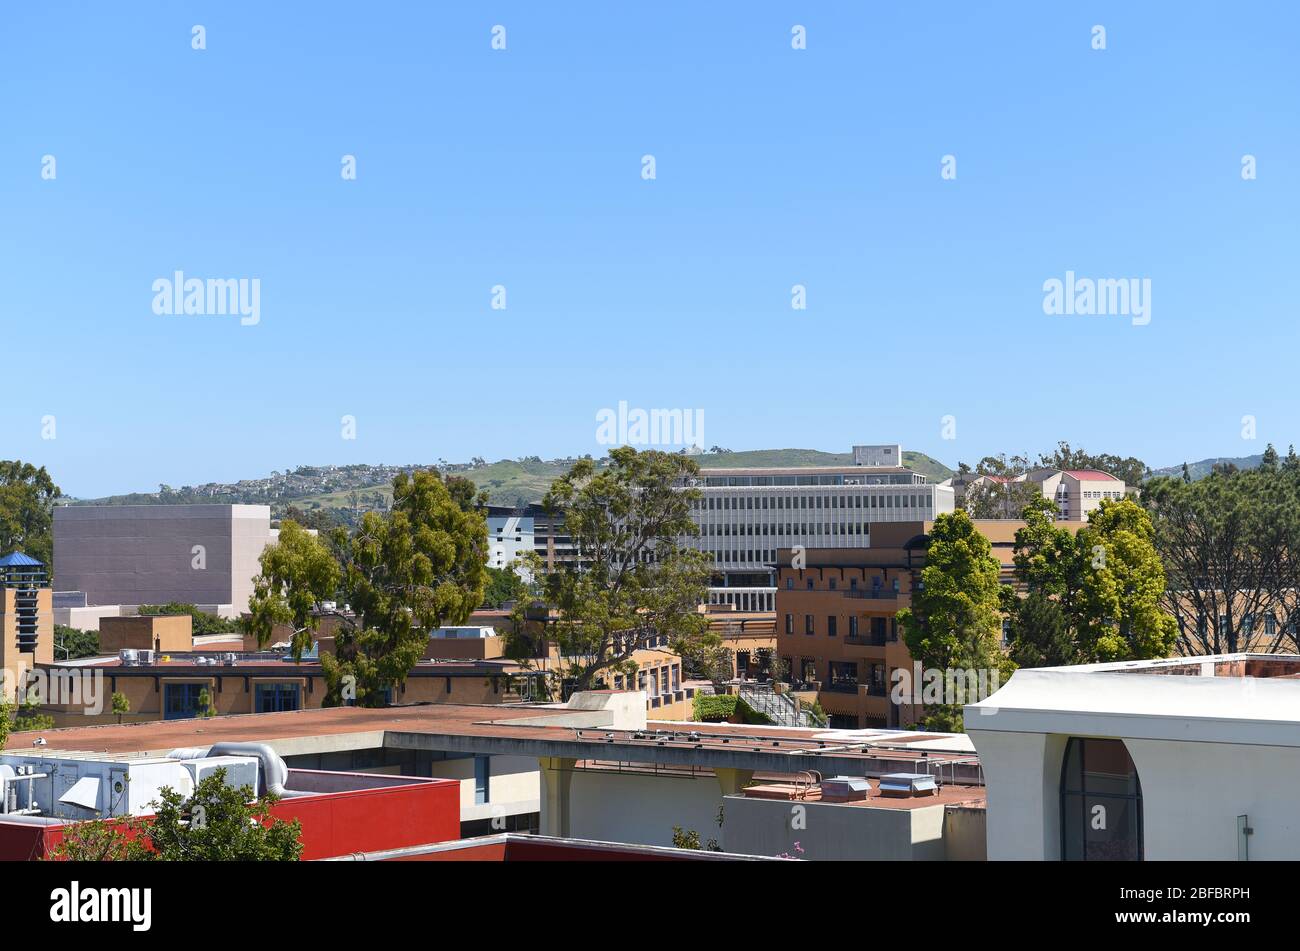 IRVINE, KALIFORNIEN - 16. APRIL 2020: Gebäude und Dächer auf dem Campus der University of California Irvine, UCI. Stockfoto